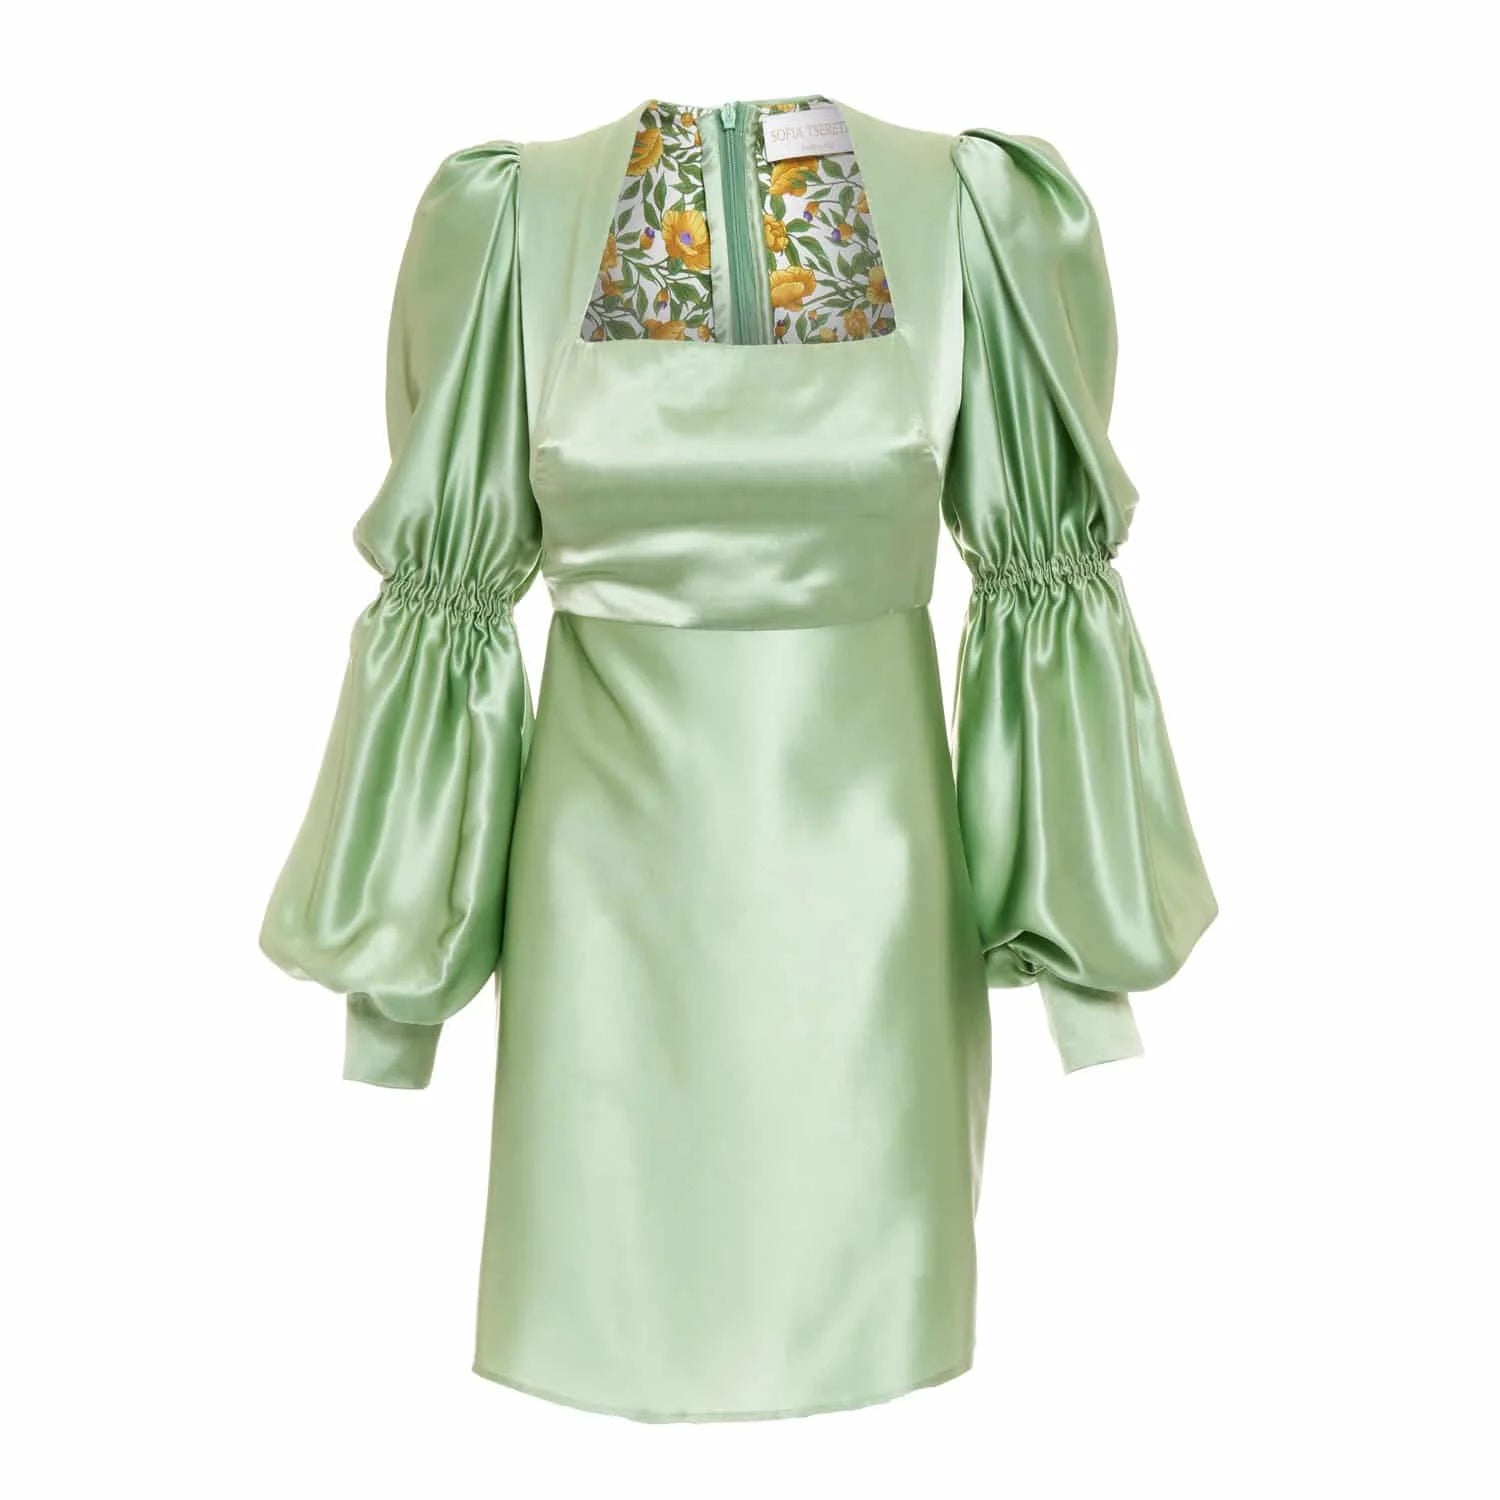 Short light green dress - Dress